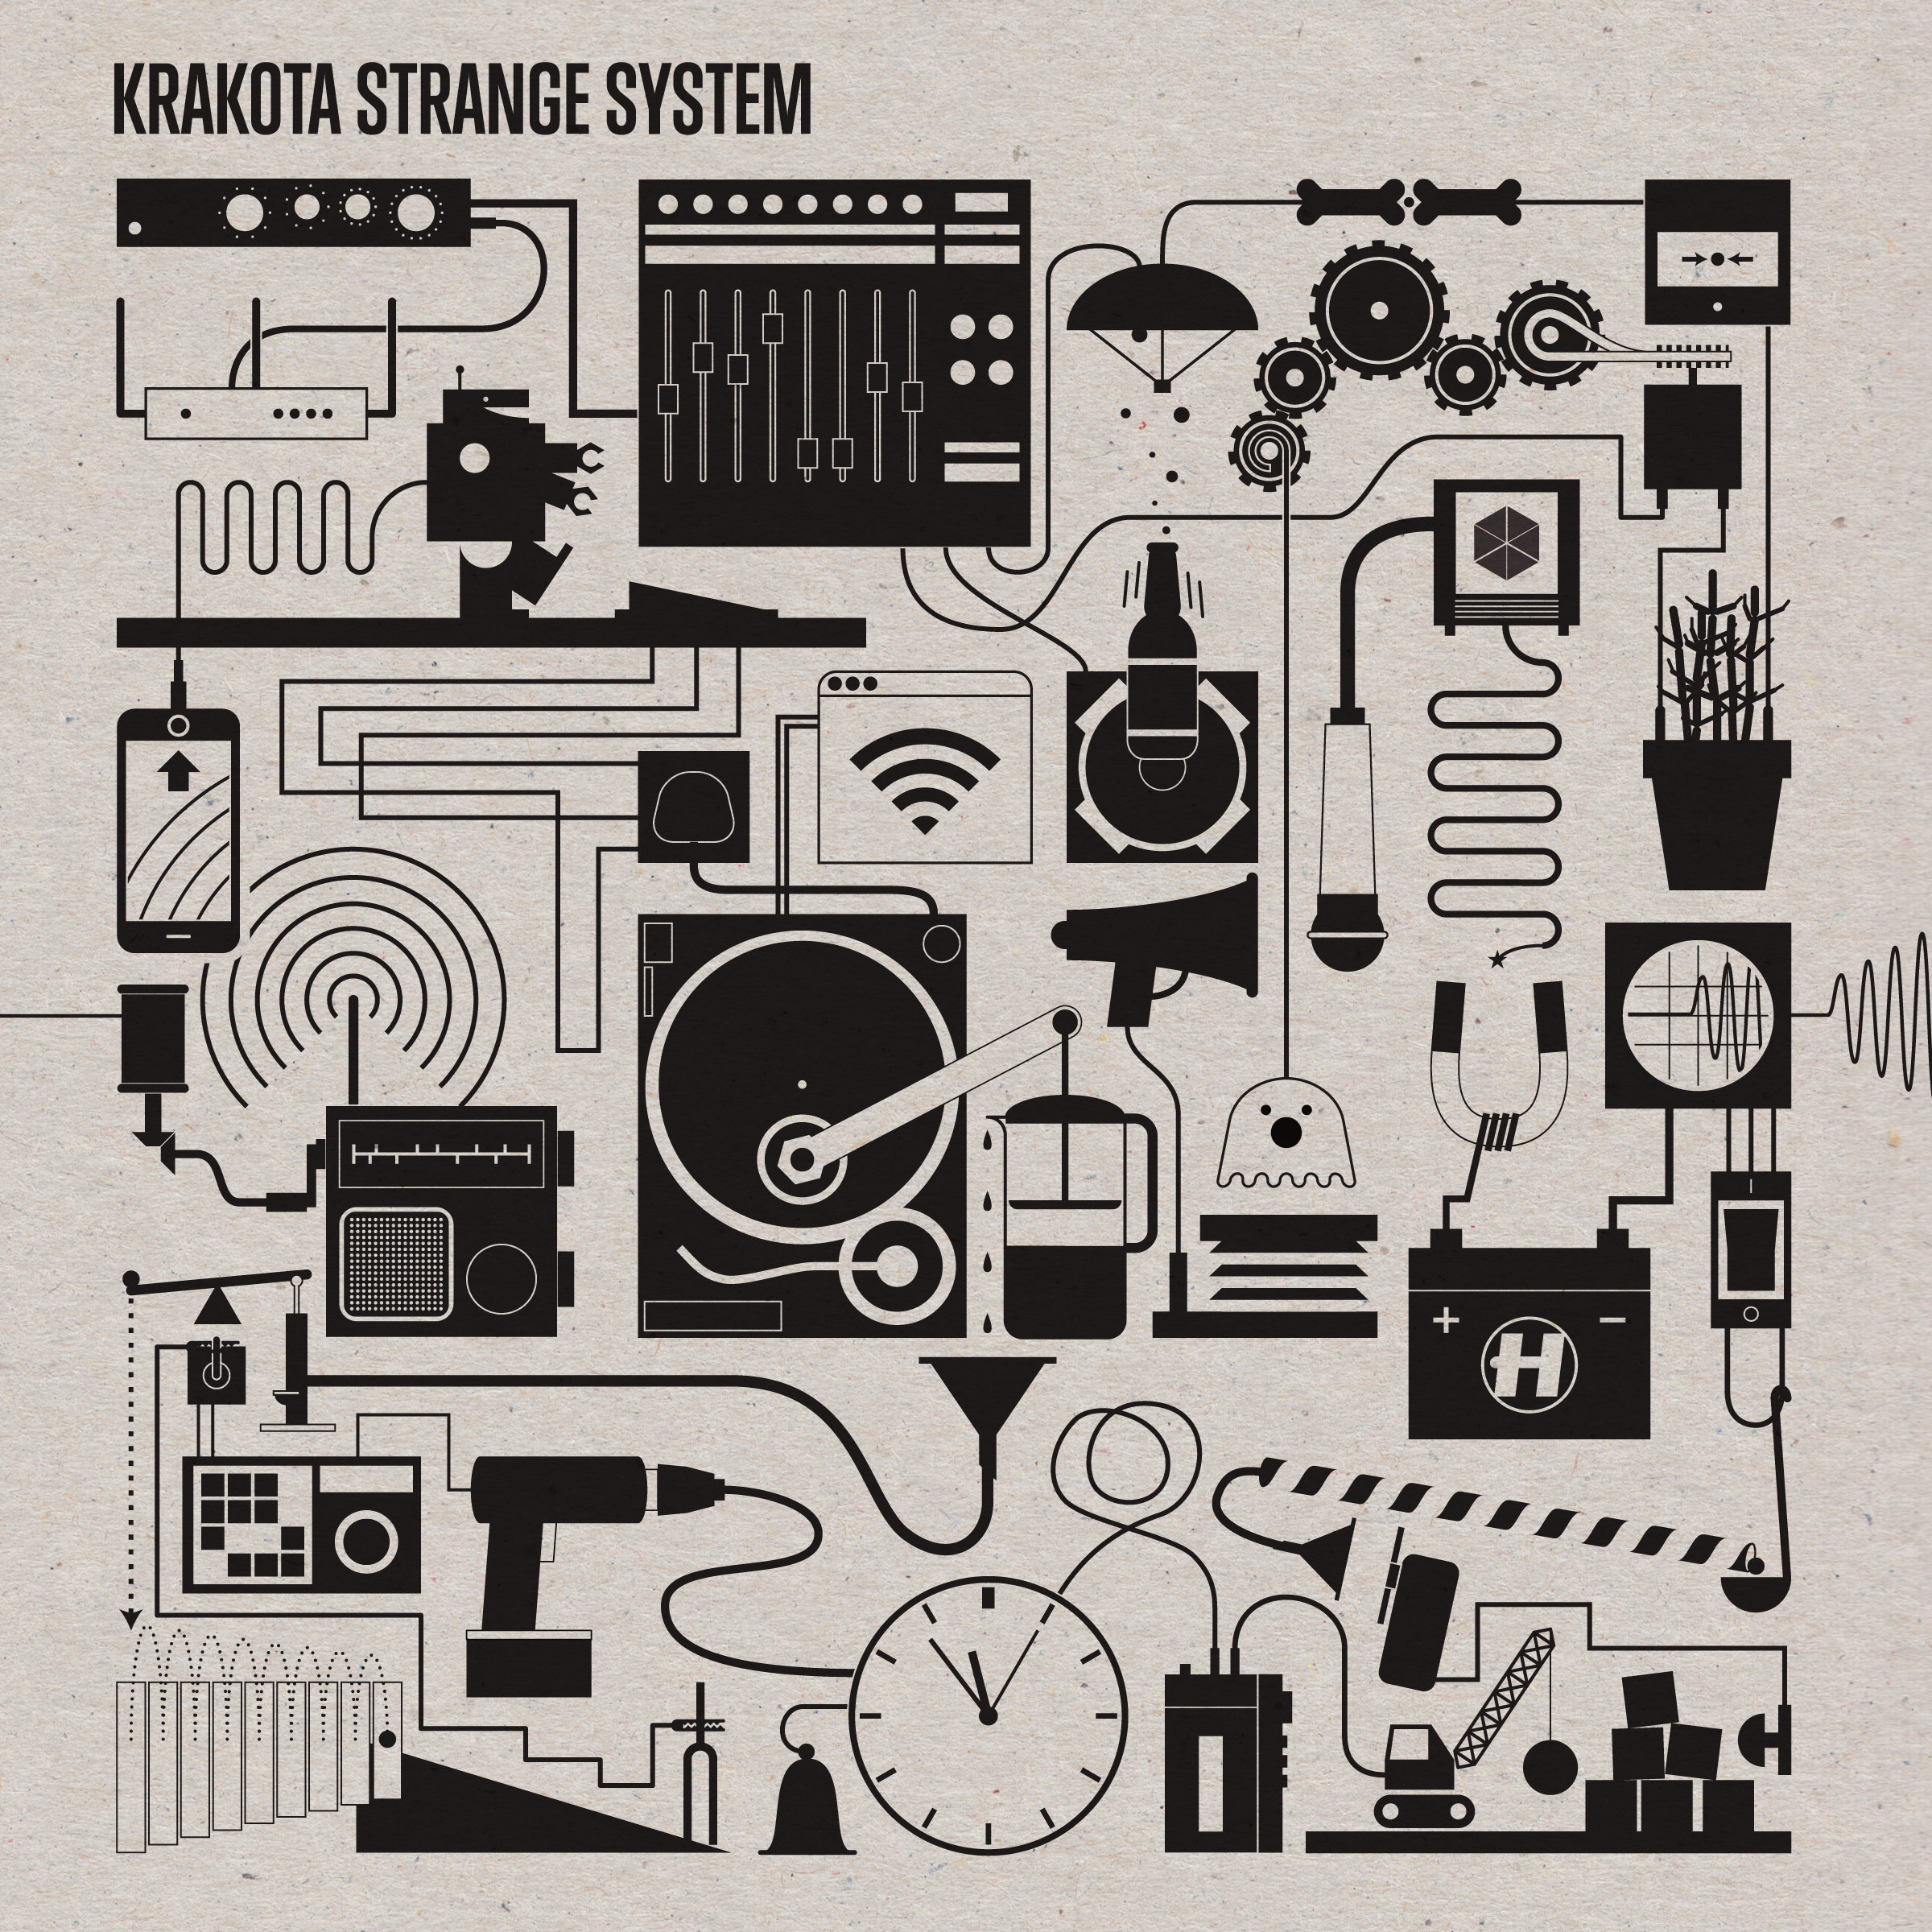 Krakota's Strange System